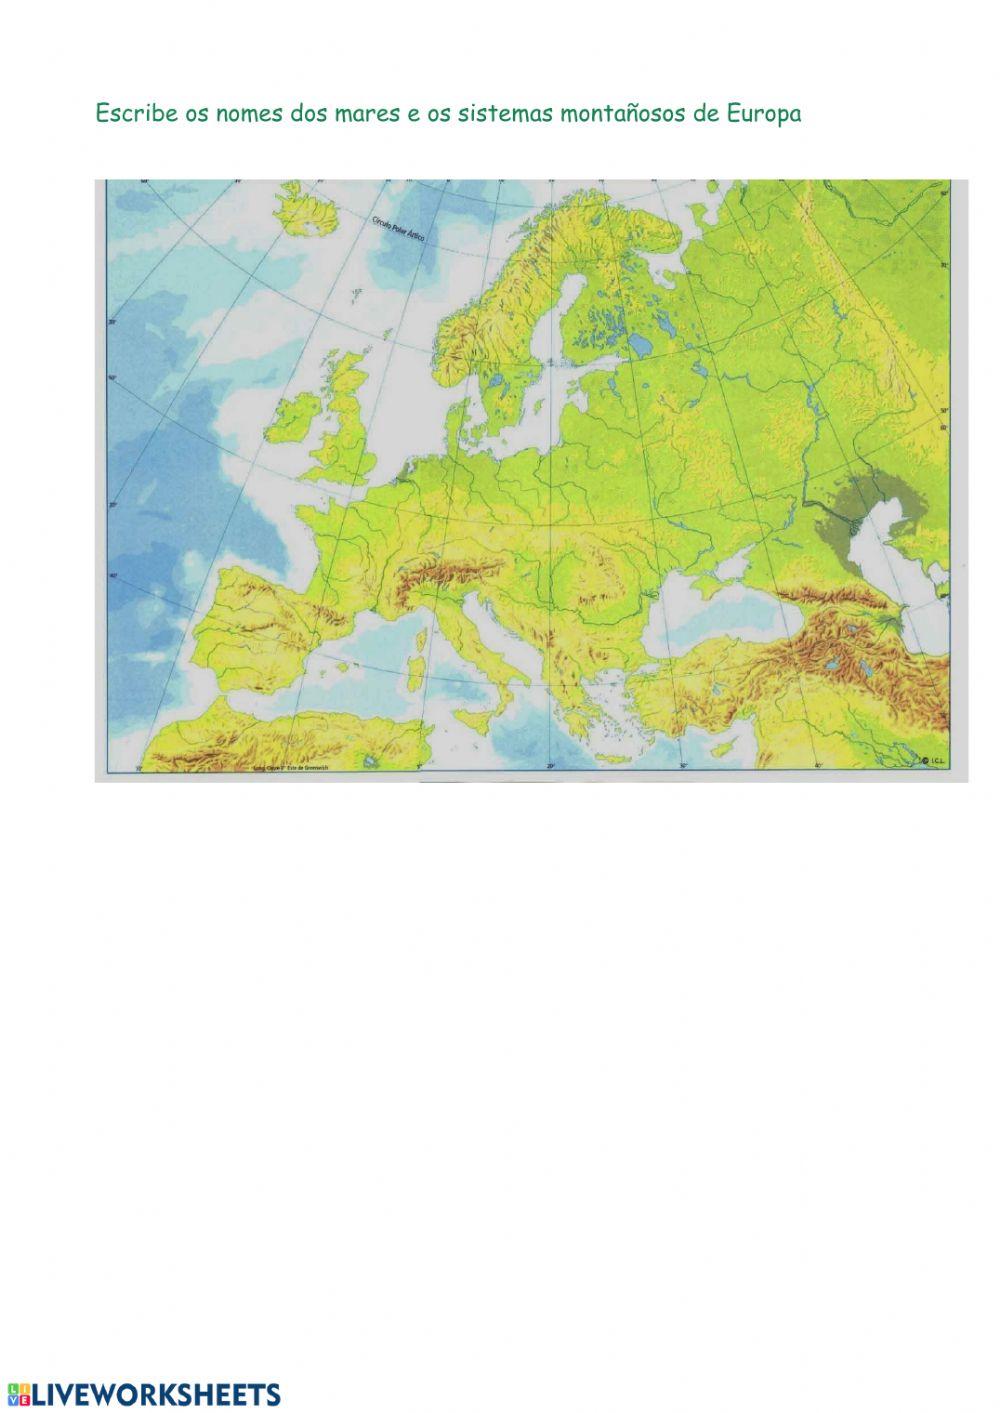 Mares e sistemas montañosos de Europa